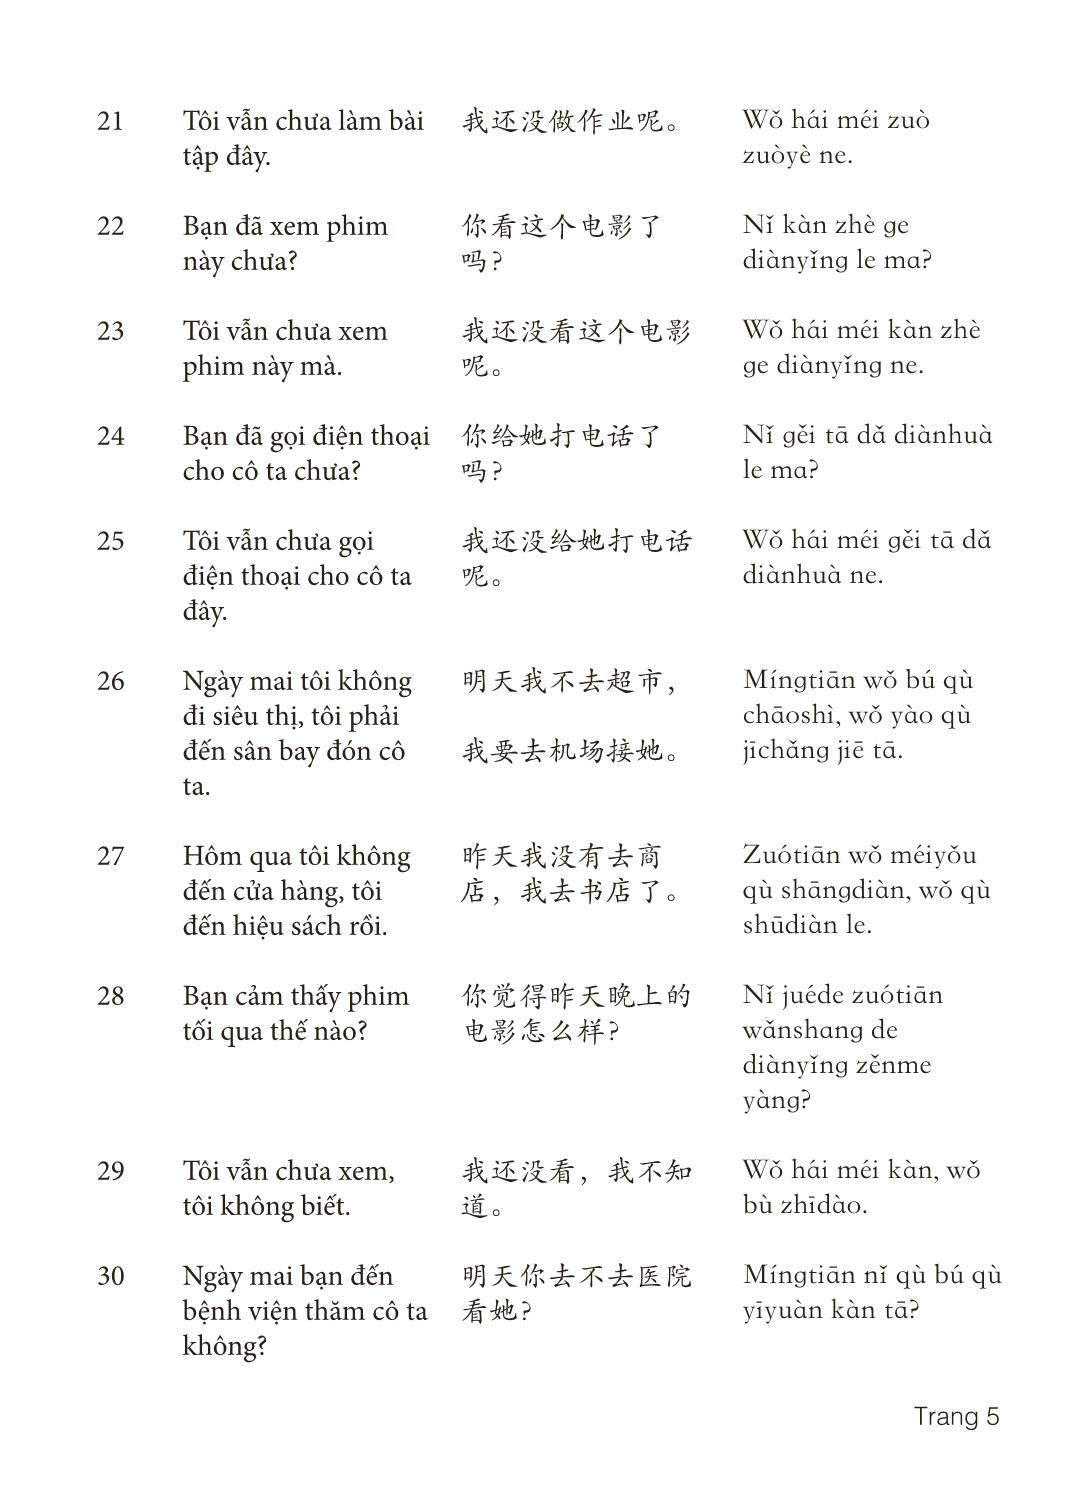 3000 Câu đàm thoại tiếng Hoa - Phần 9 trang 5